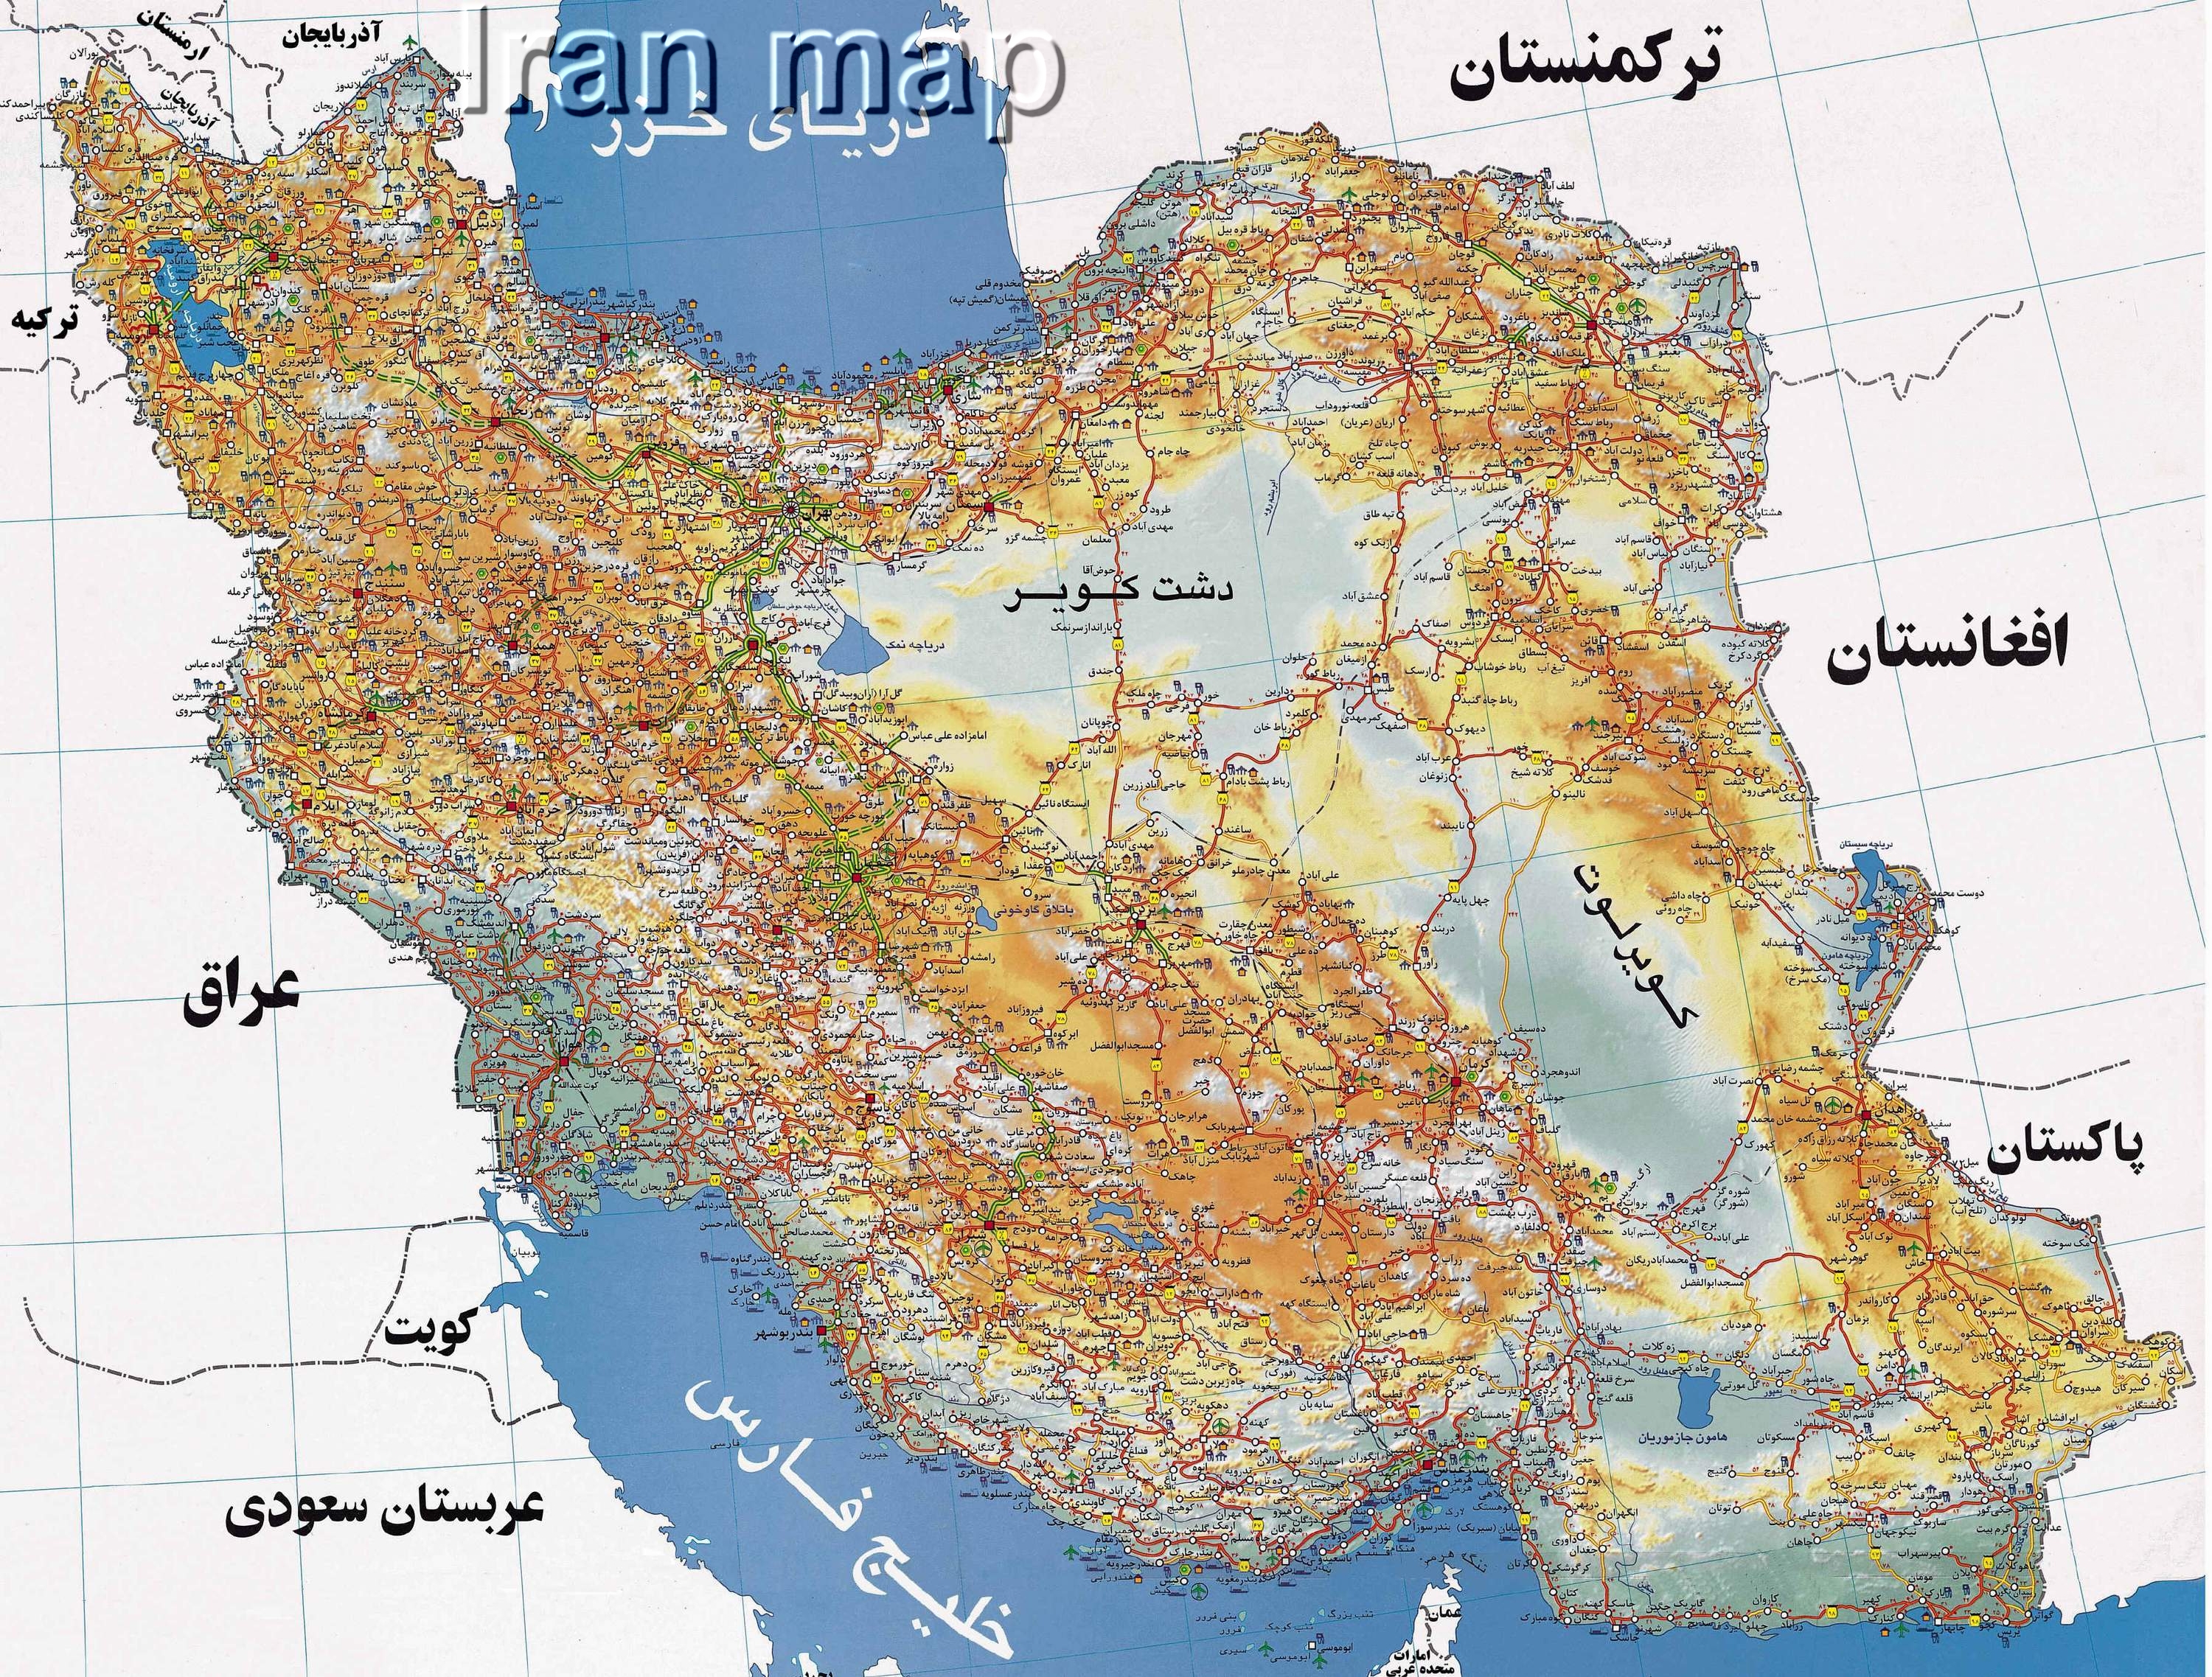 نقشه فارسی راه های ایران با کیفیت بالا  Persian Map Of High Quality Iranian Road